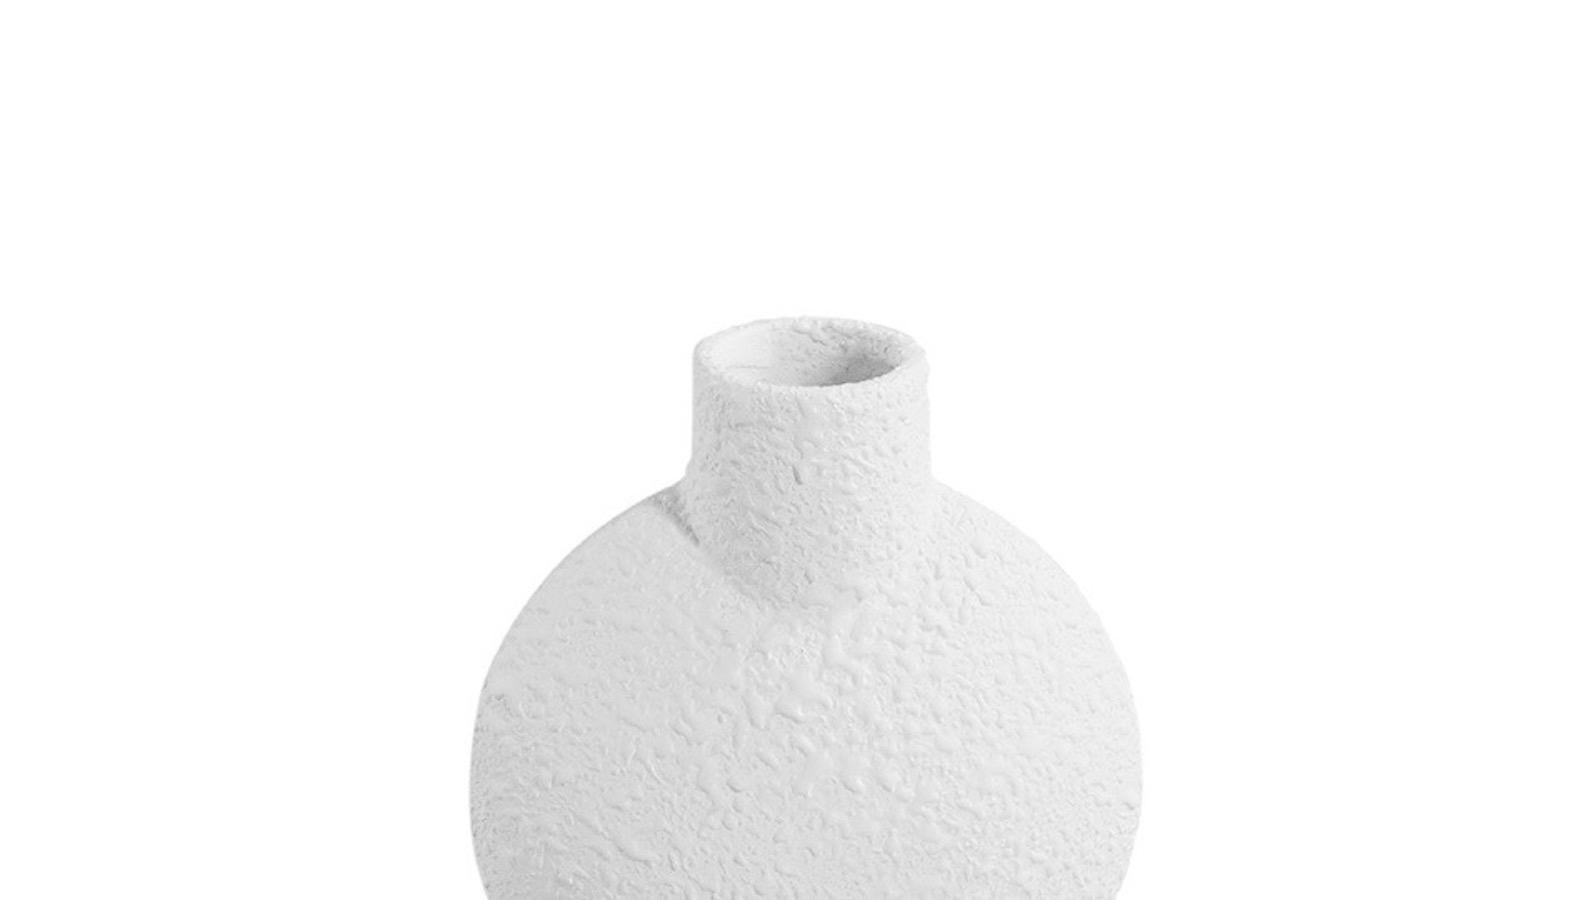 Zeitgenössische dänische Vase aus weißer Keramik mit Struktur. 
Blasenförmiges Oberteil mit einfachem, röhrenförmigem Ausguss.
Einzelner rohrförmiger Sockel.
ANKOMMEND NOVEMBER

   